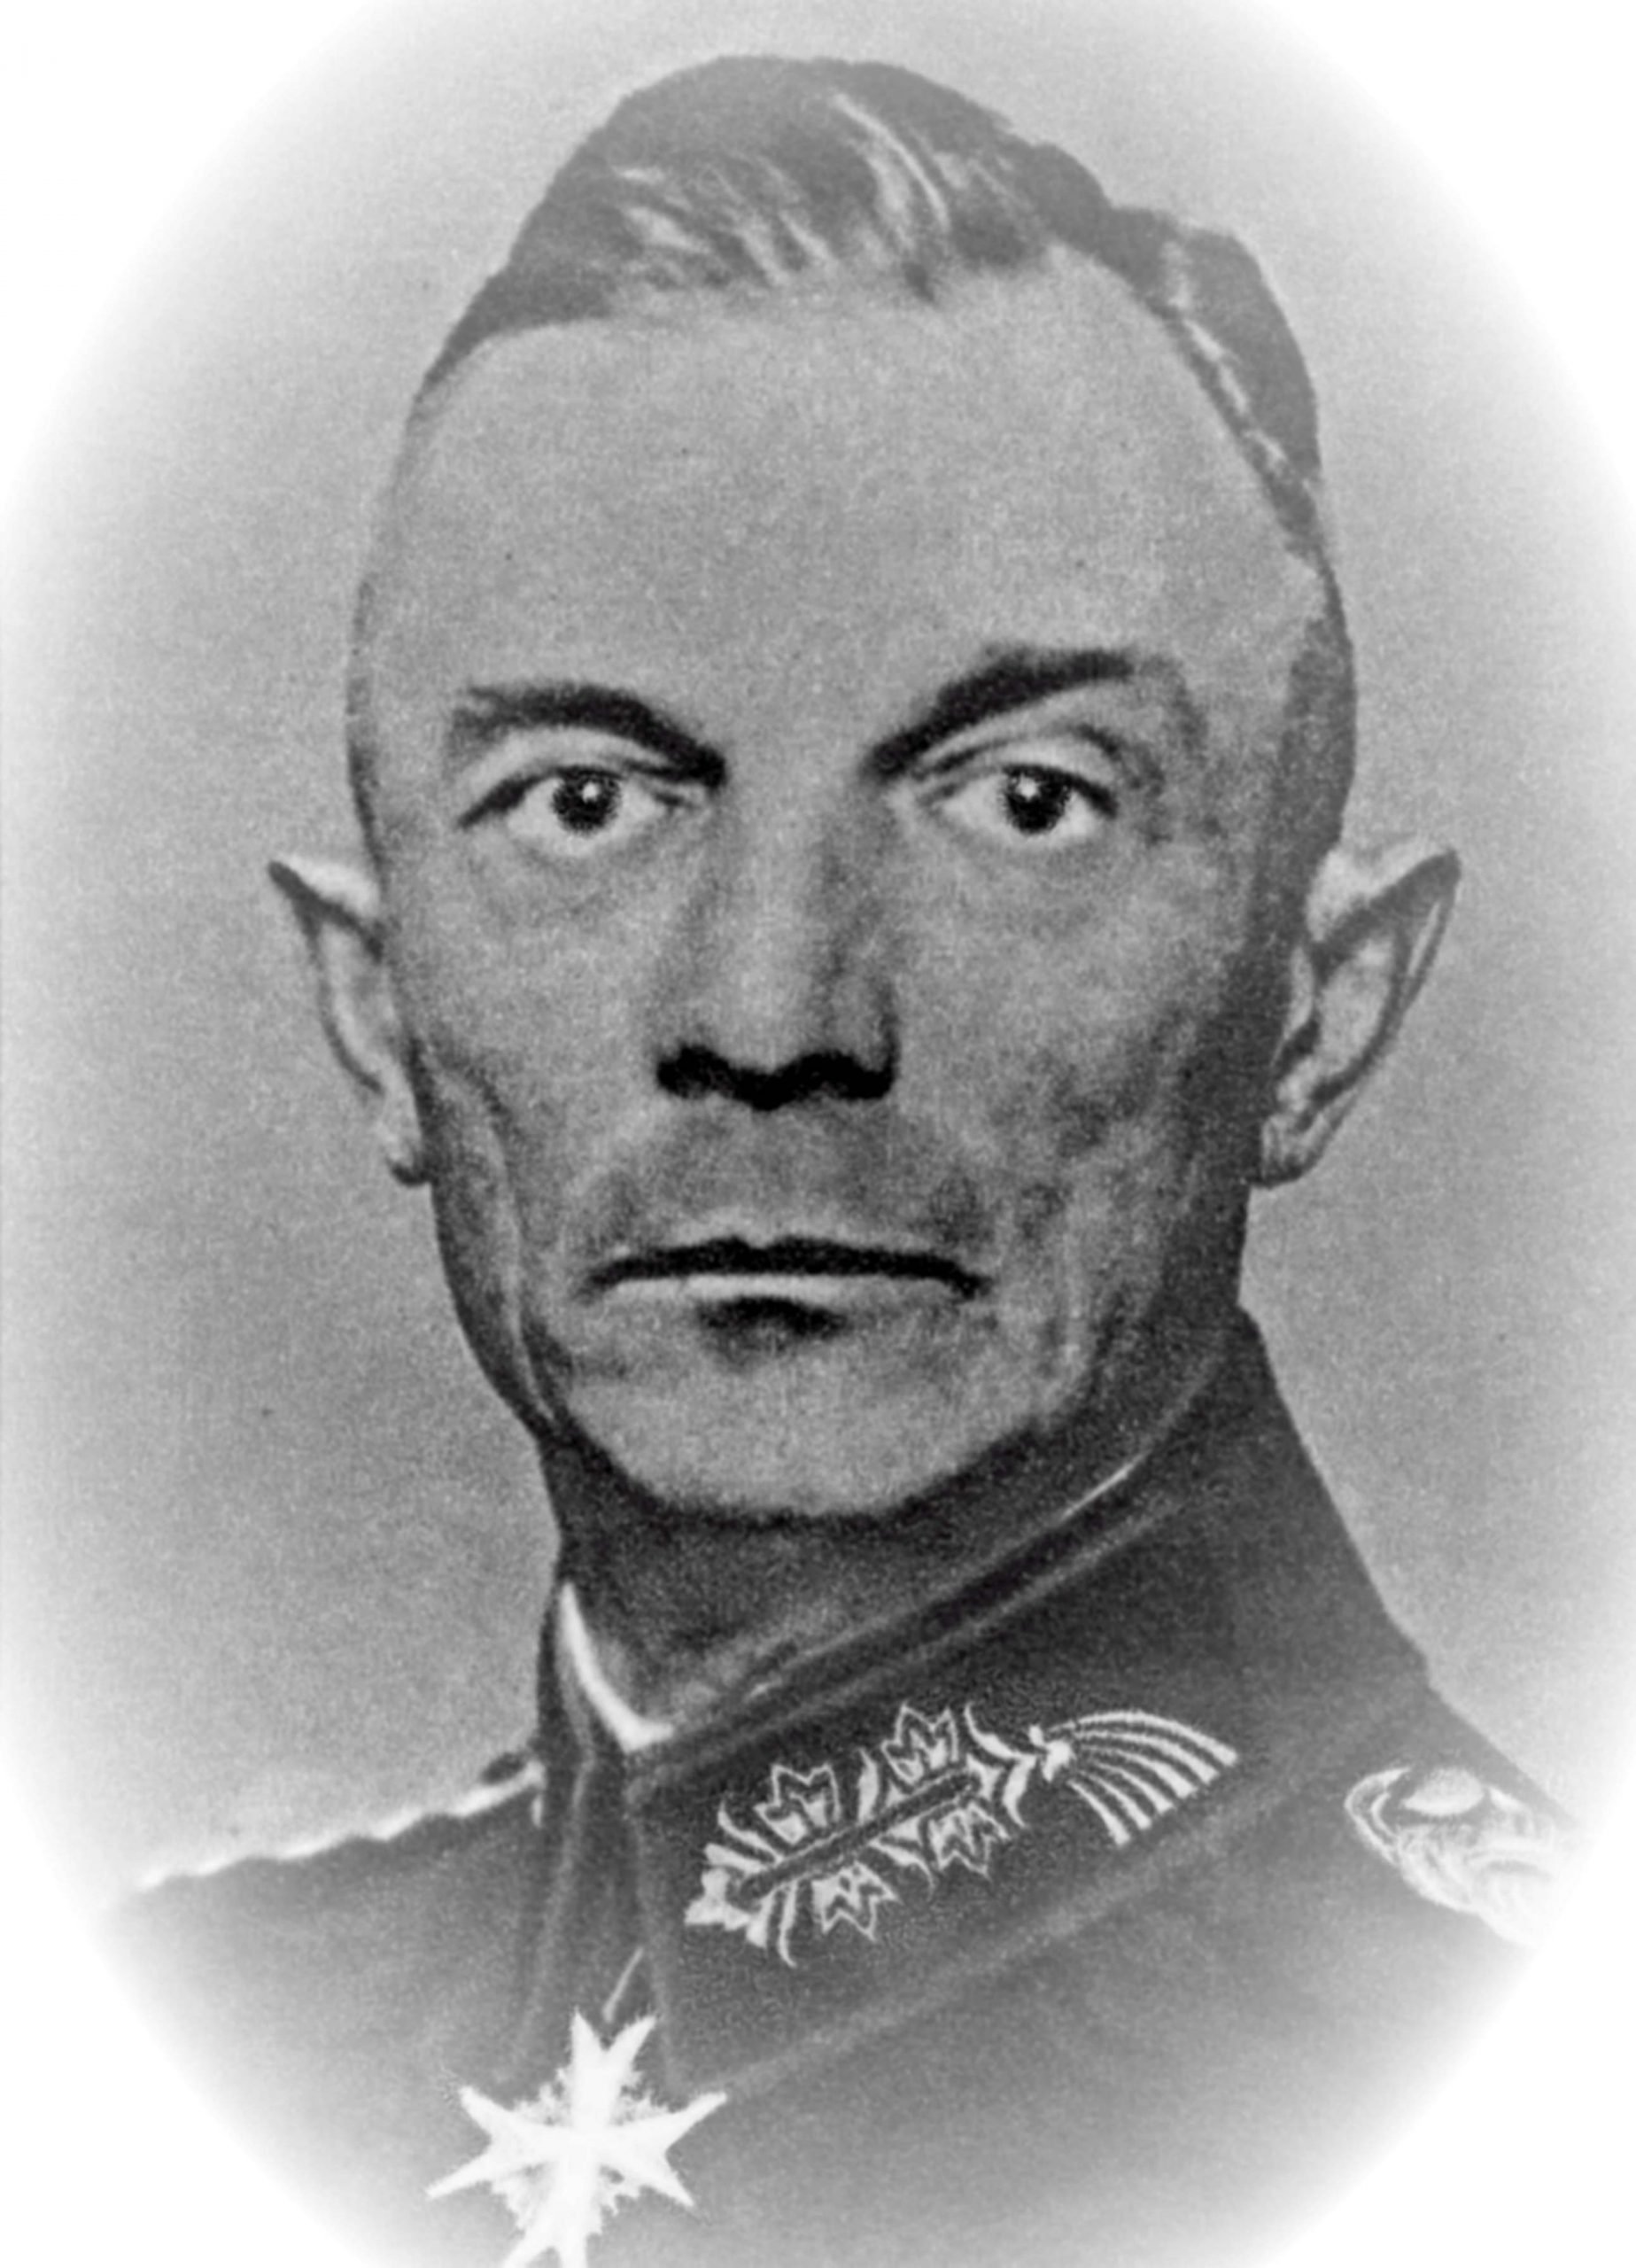 Portrait of German Field Marshal Fedor von Bock